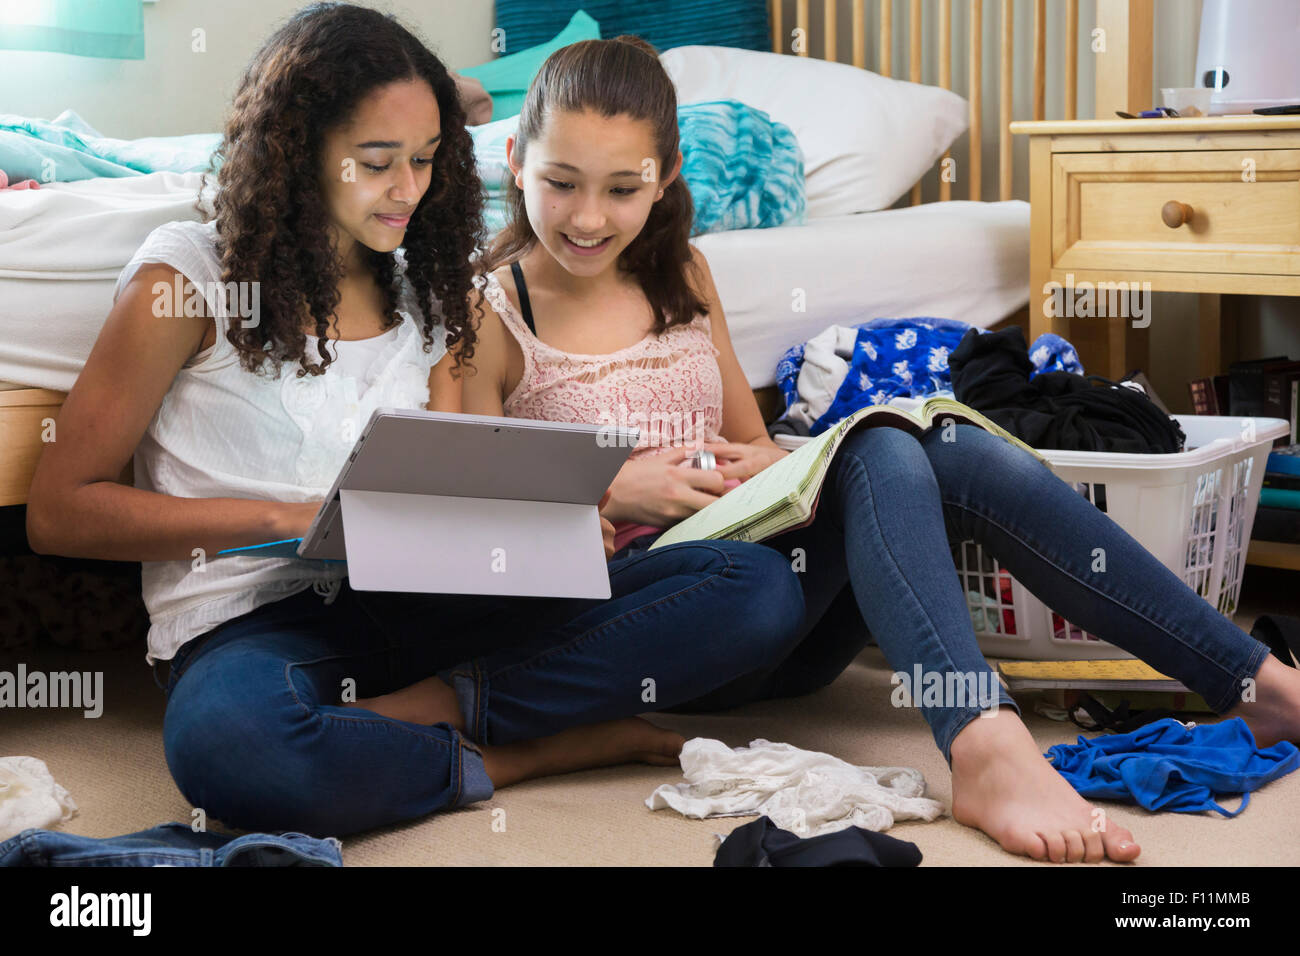 Le ragazze adolescenti con tavoletta digitale in camera da letto Foto Stock